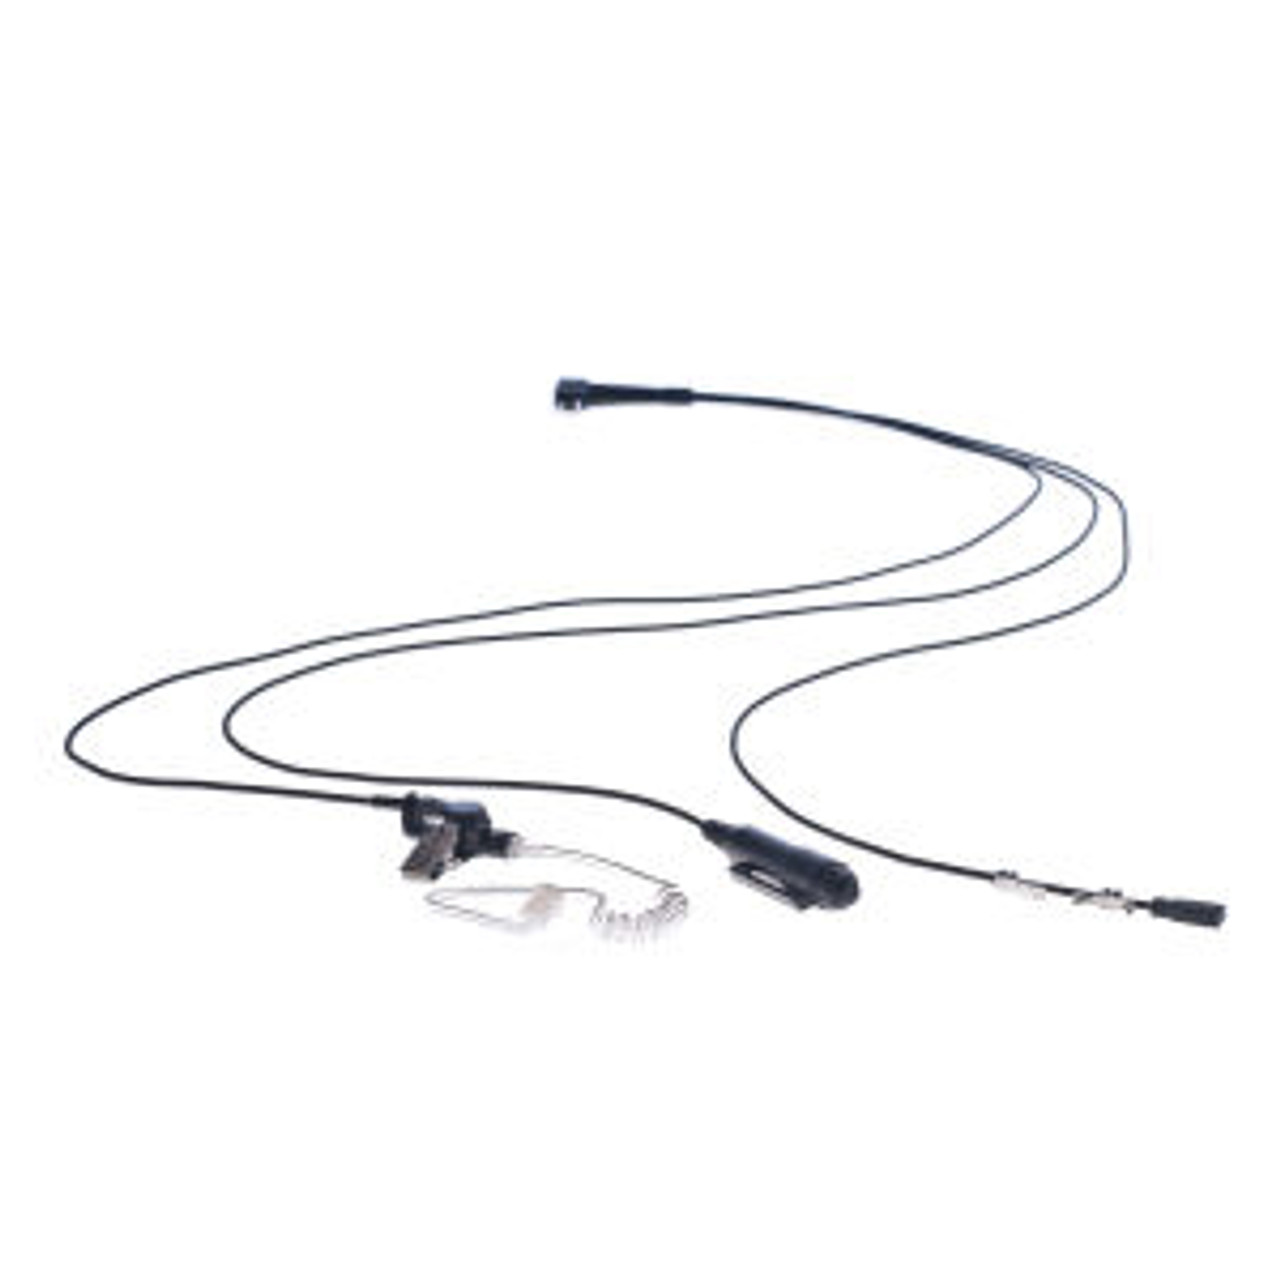 Relm RP7200 3-Wire Surveillance Kit